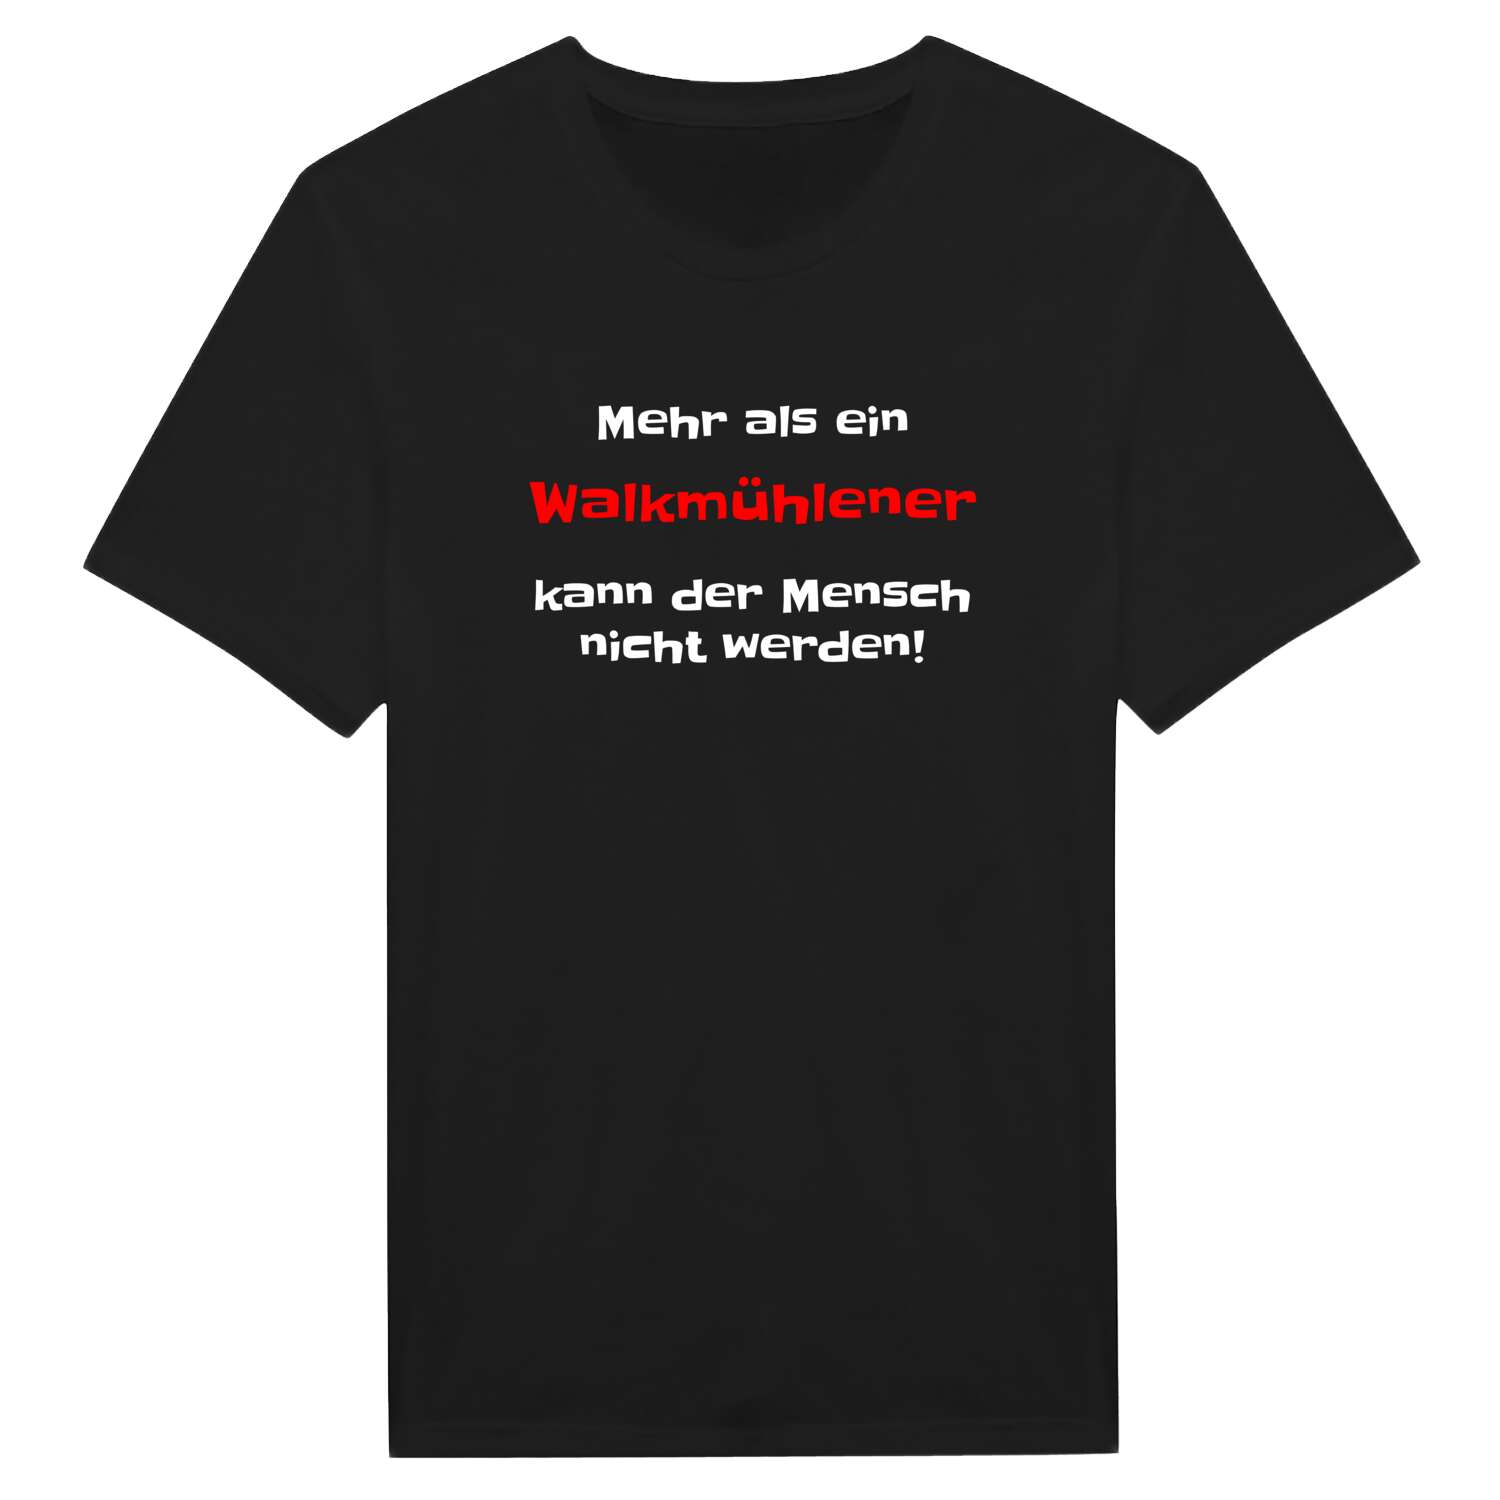 Walkmühle T-Shirt »Mehr als ein«